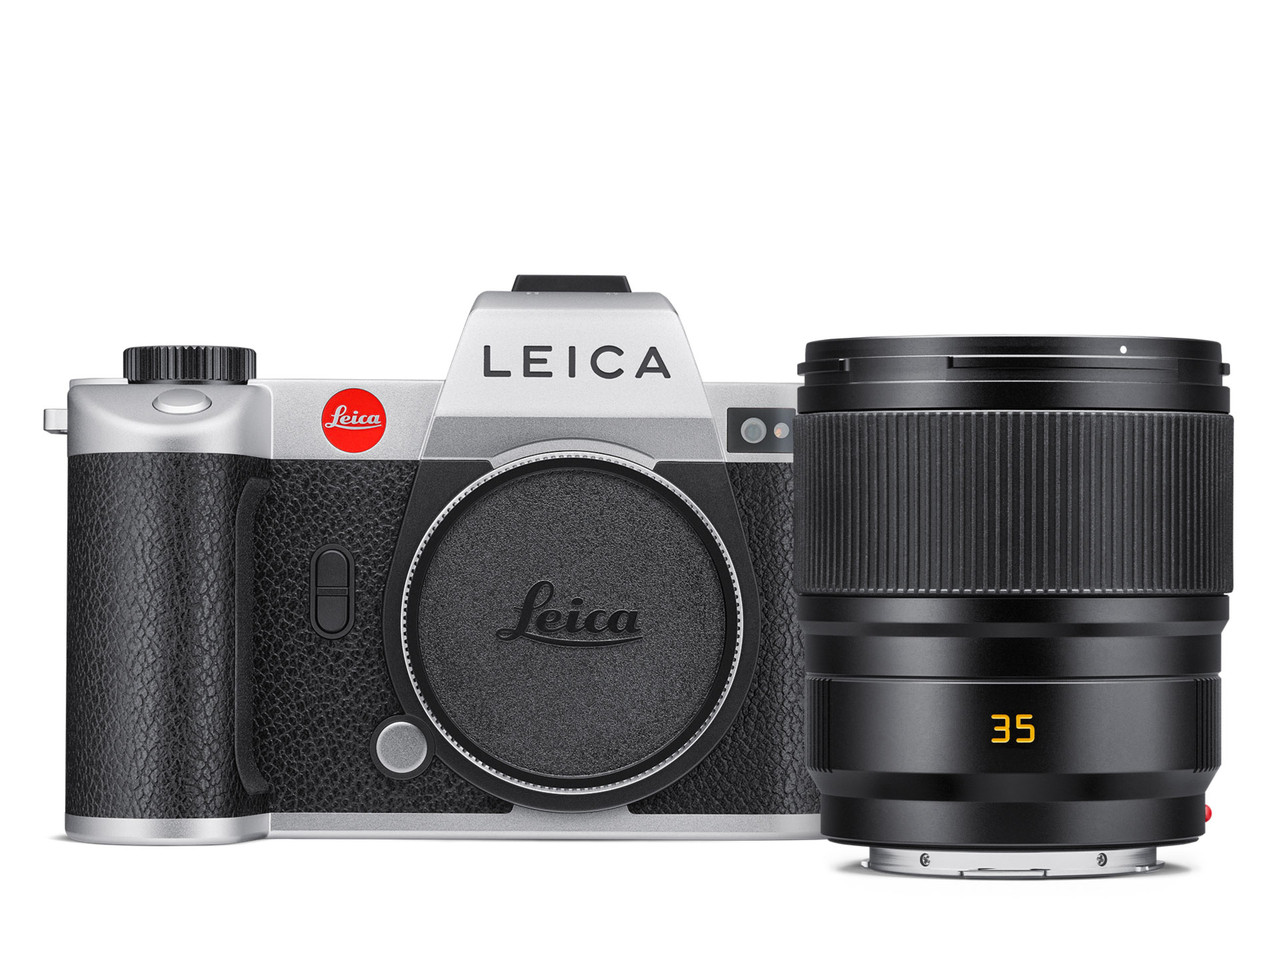 Leica SL2 Silver Bundle with Leica Summicron-SL 35mm f/2 ASPH. Lens